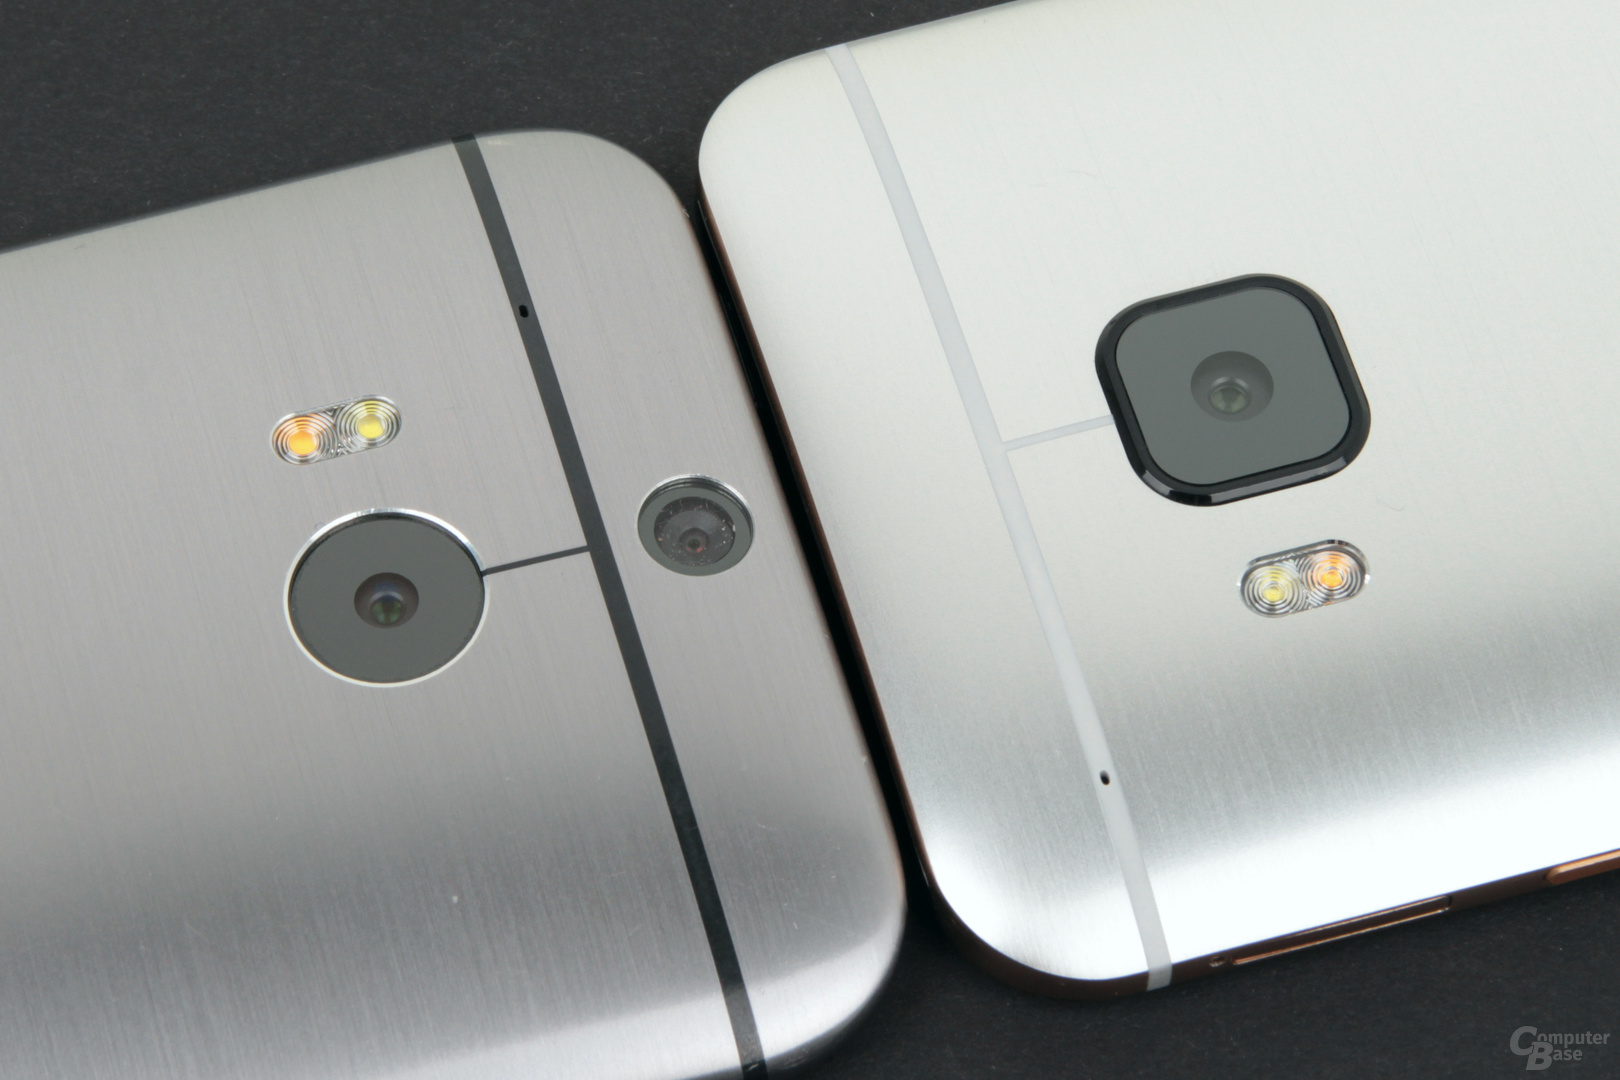 HTC One (M8) (links) und One M9